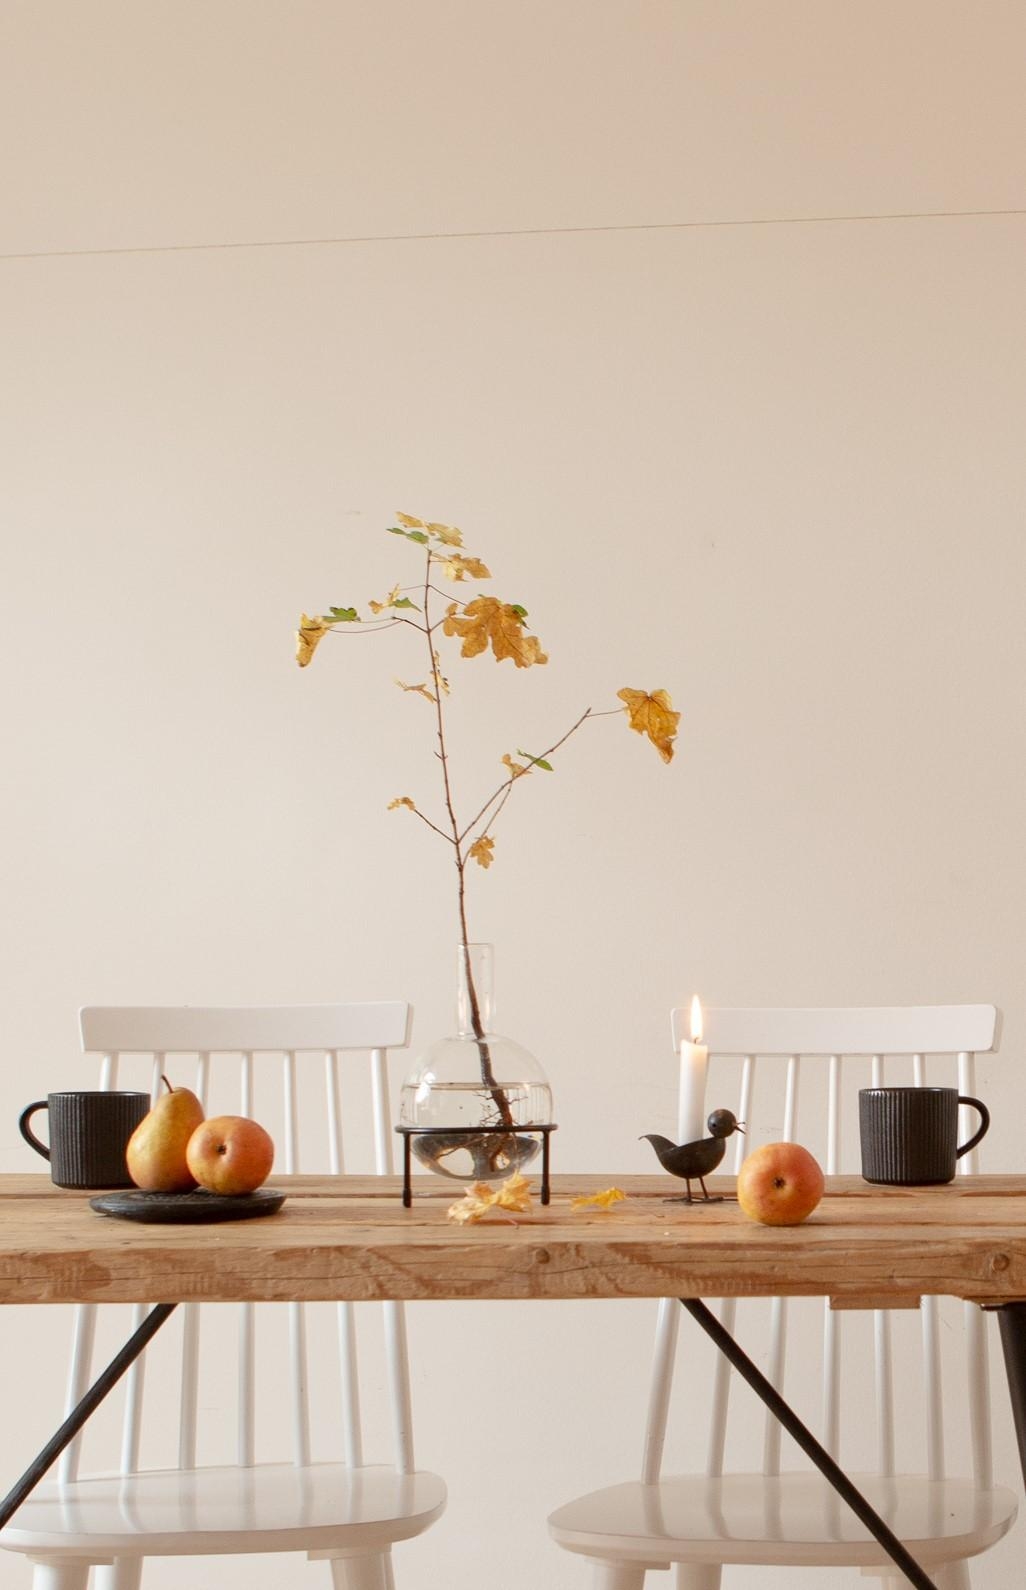 Herbstlicher Tisch
#Herbstdeko #Bäumchen #Diy